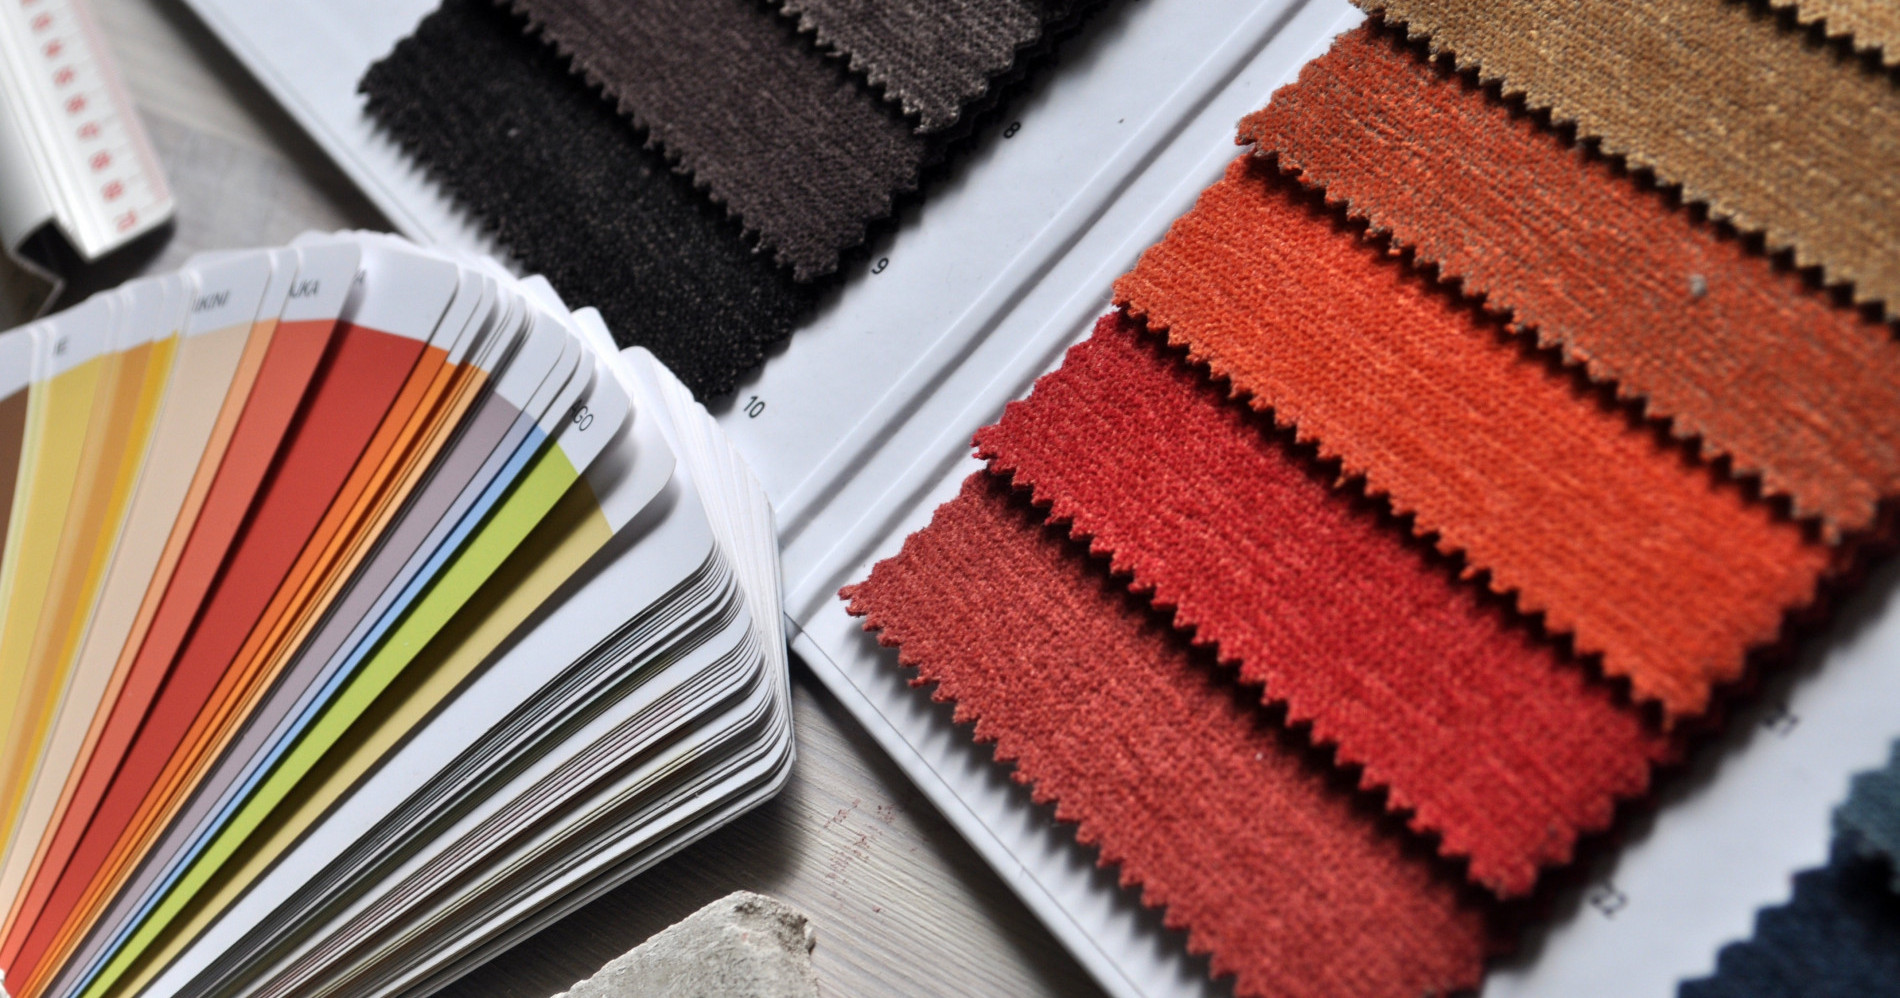 Macam-macam sample kain (Sumber gambar: Foto oleh Pixabay dari pexel via https://www.pexels.com/id-id/foto/foto-close-up-palet-warna-kain-259756/)